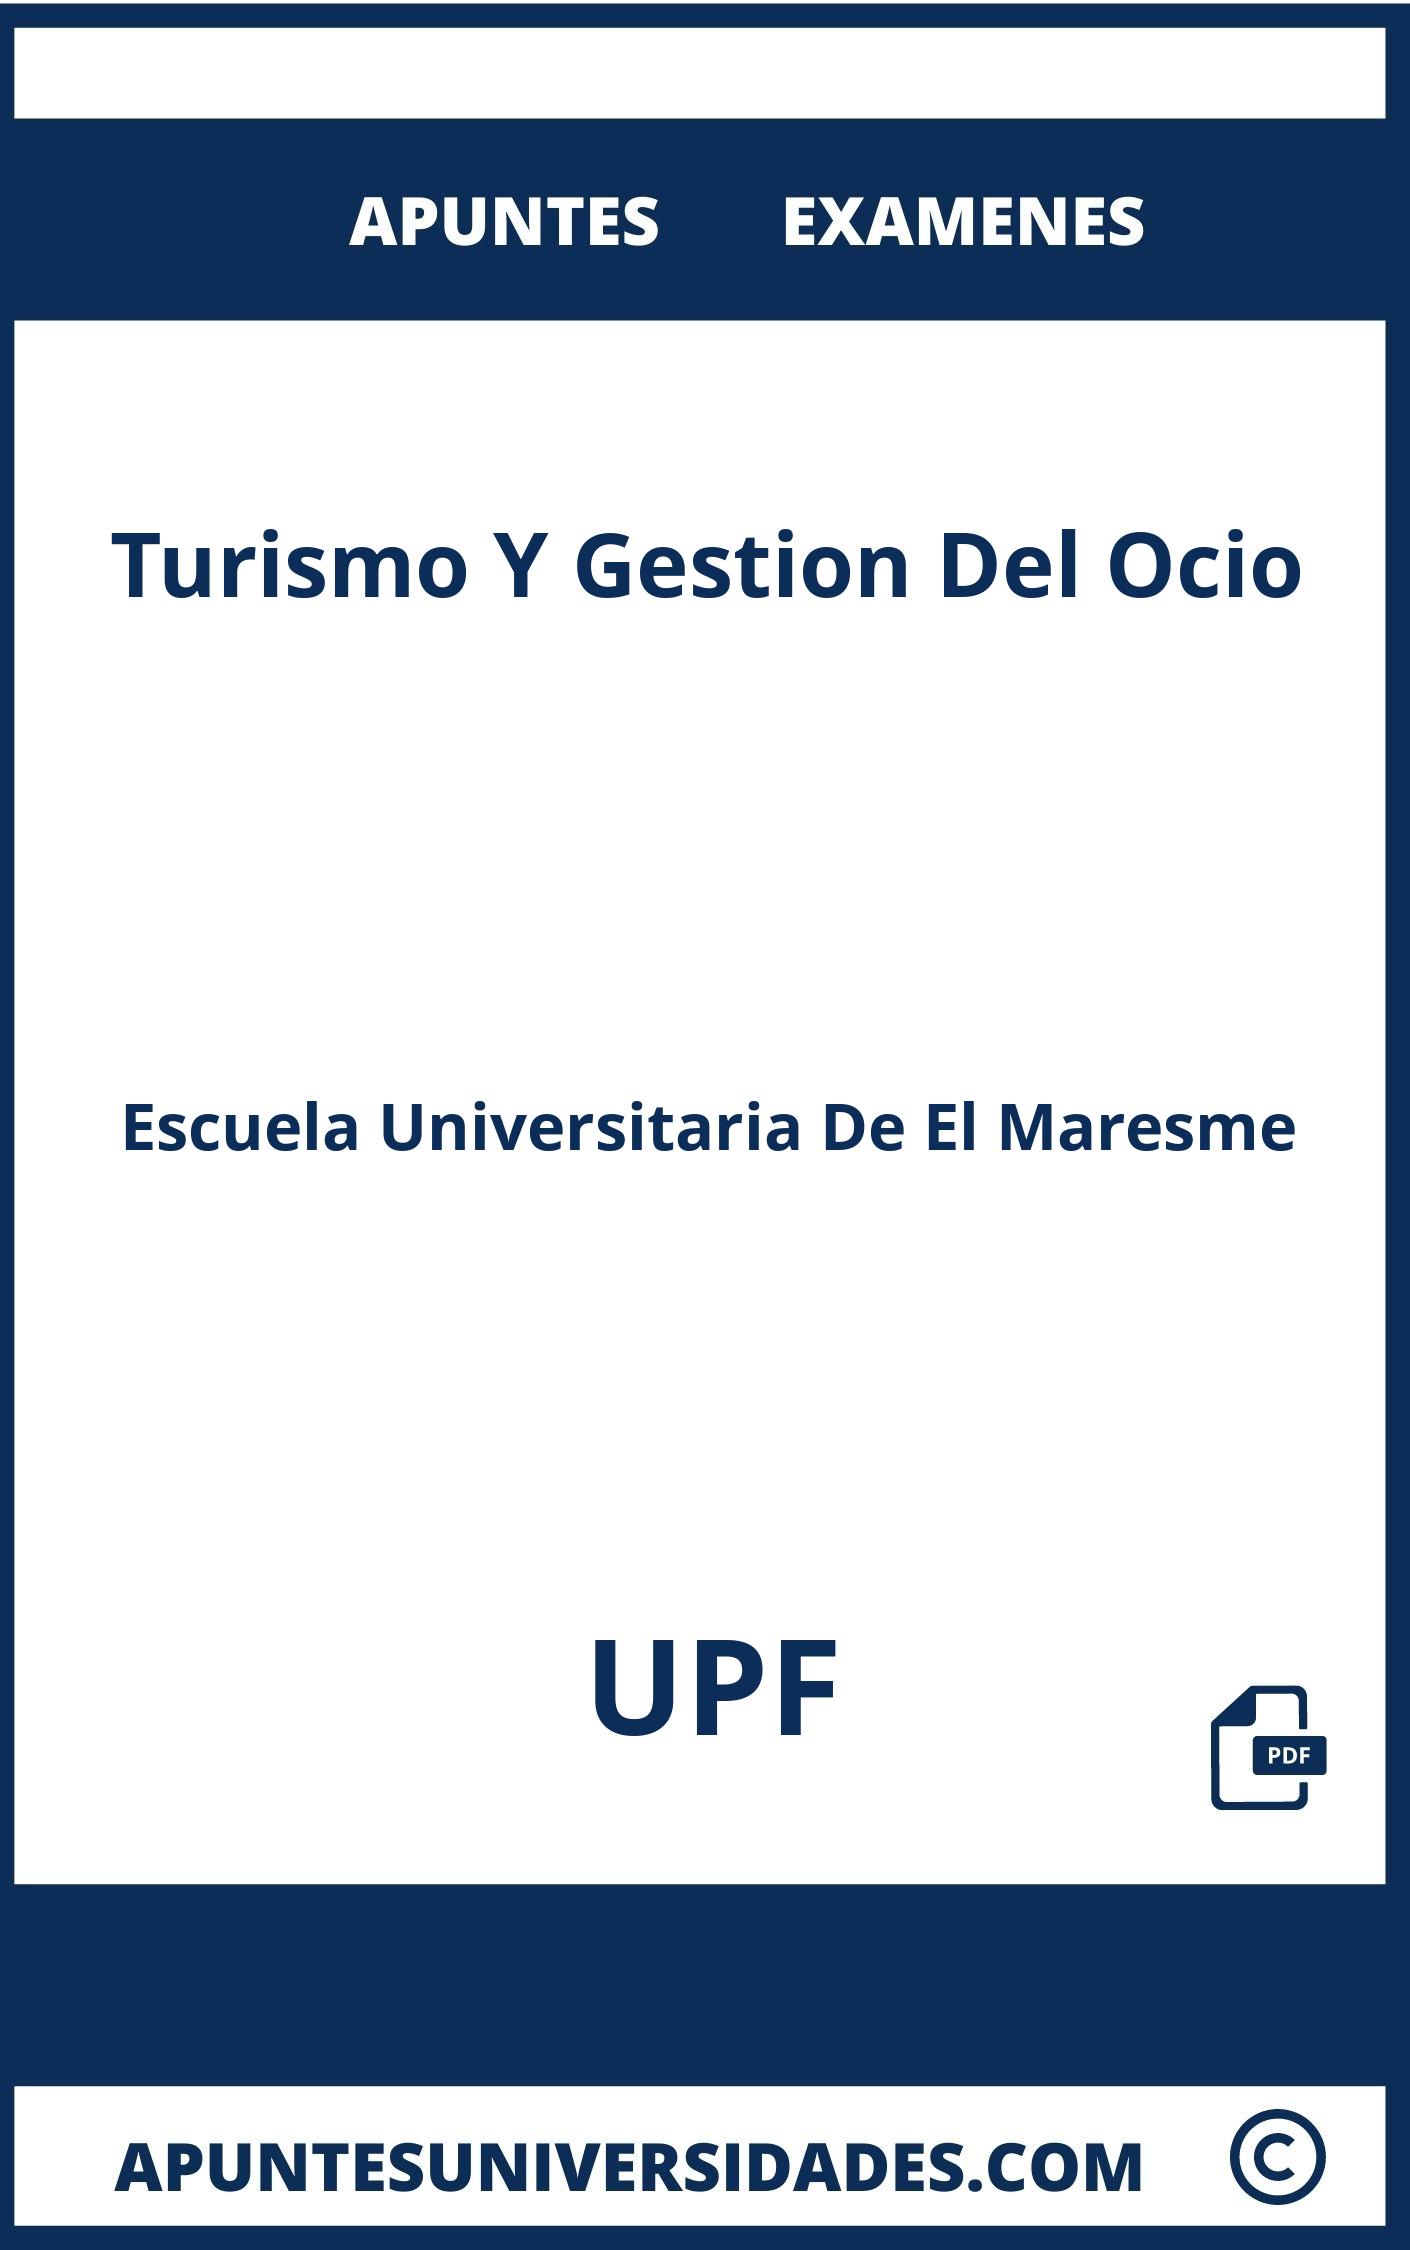 Examenes y Apuntes Turismo Y Gestion Del Ocio UPF